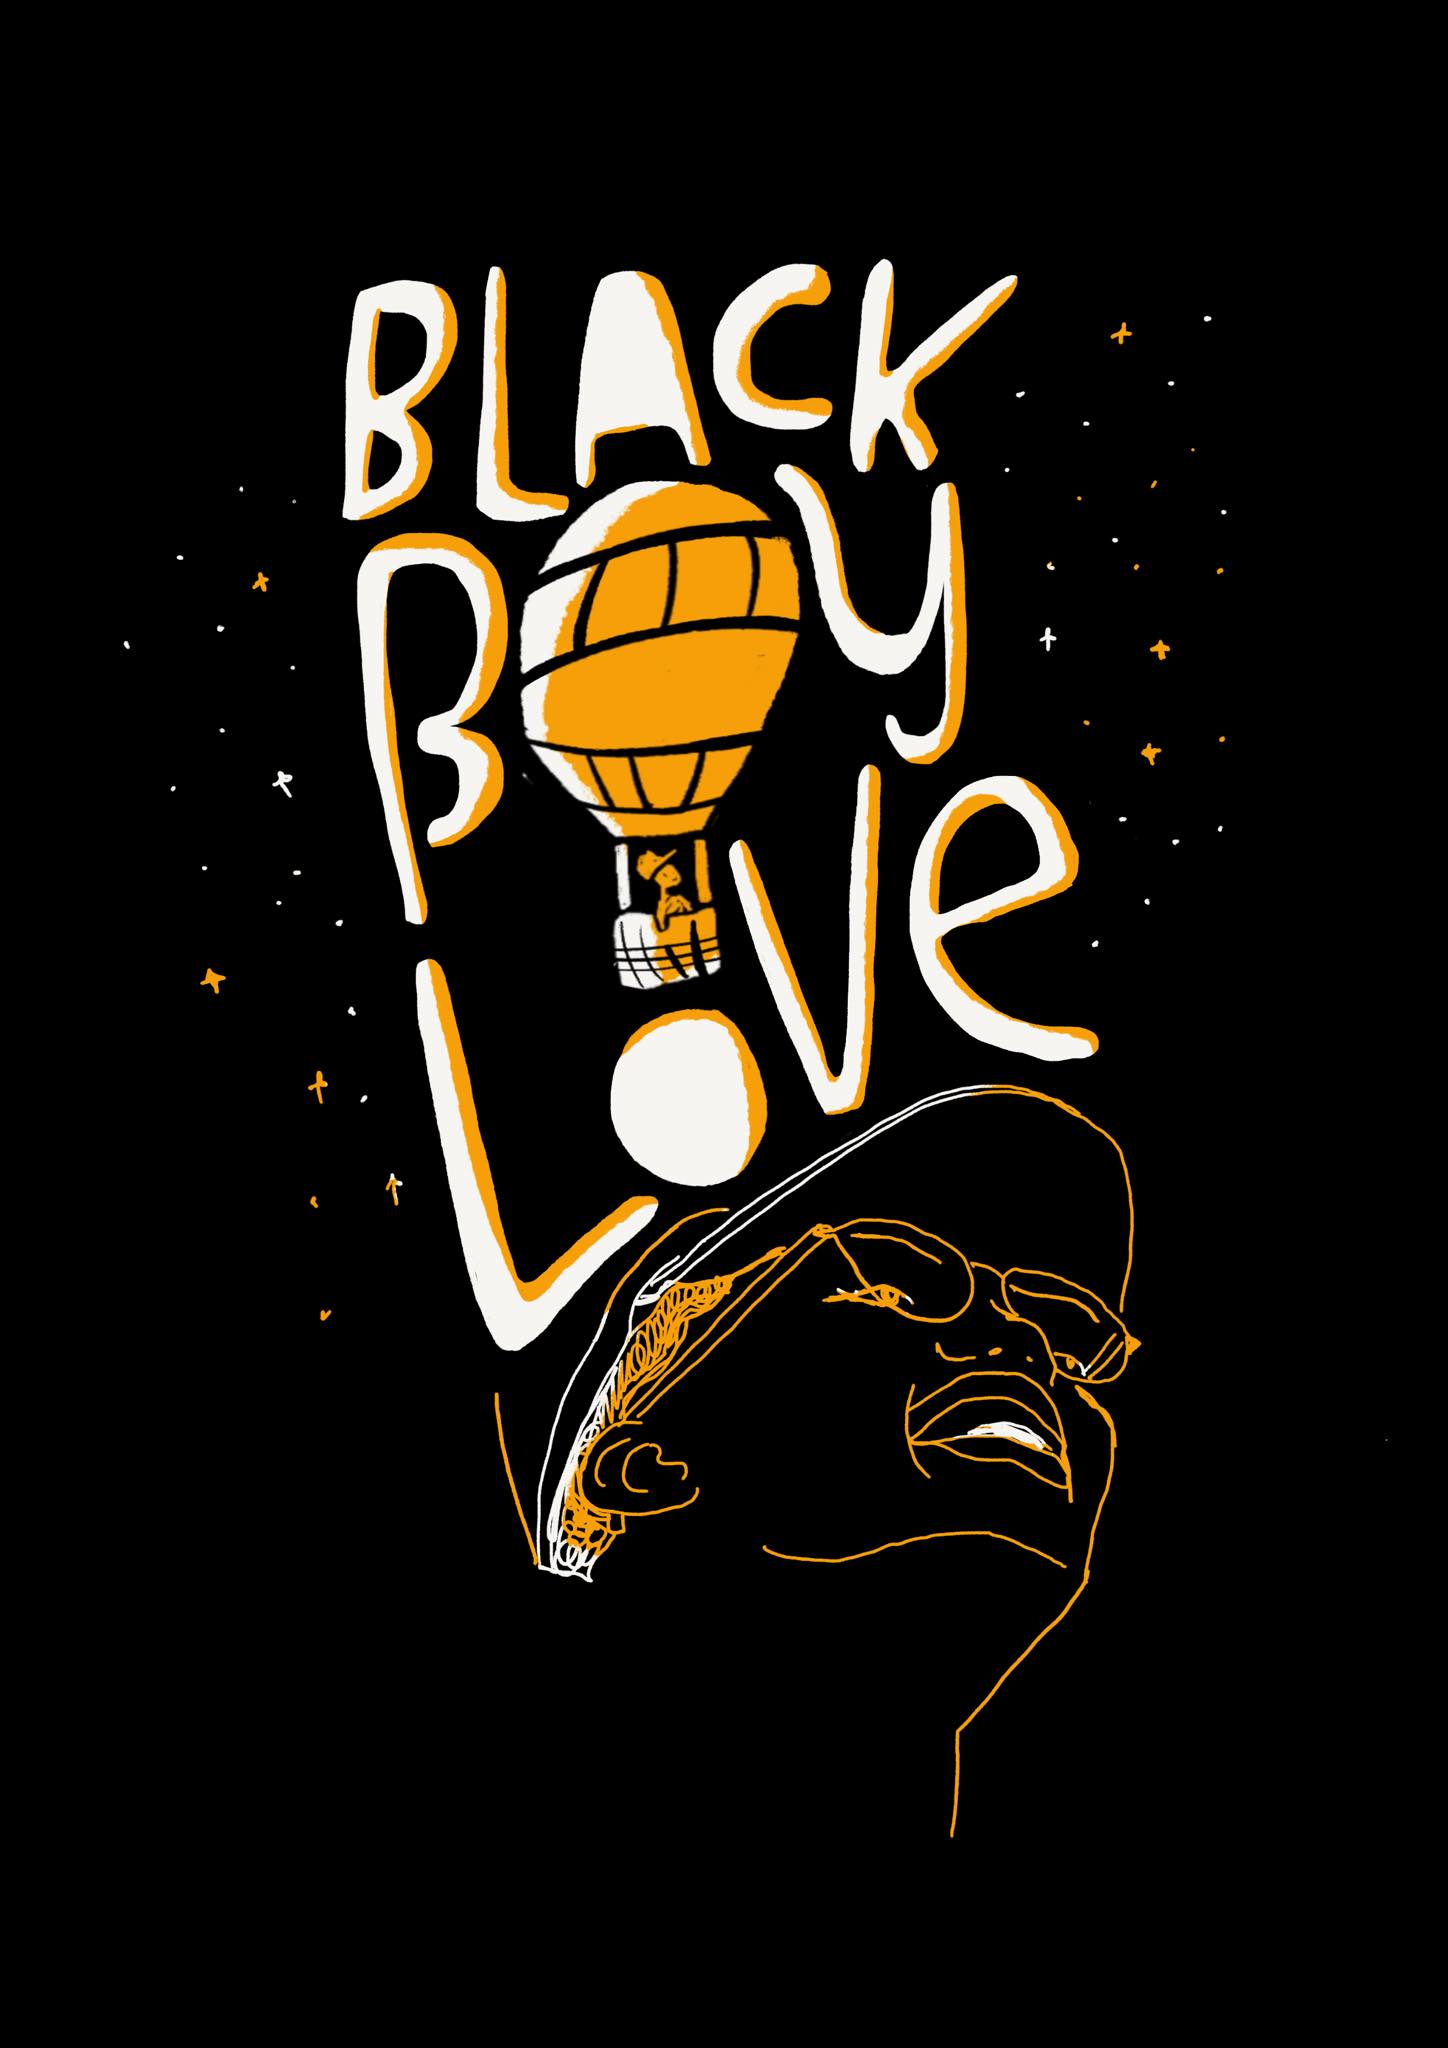 Black Boy Love